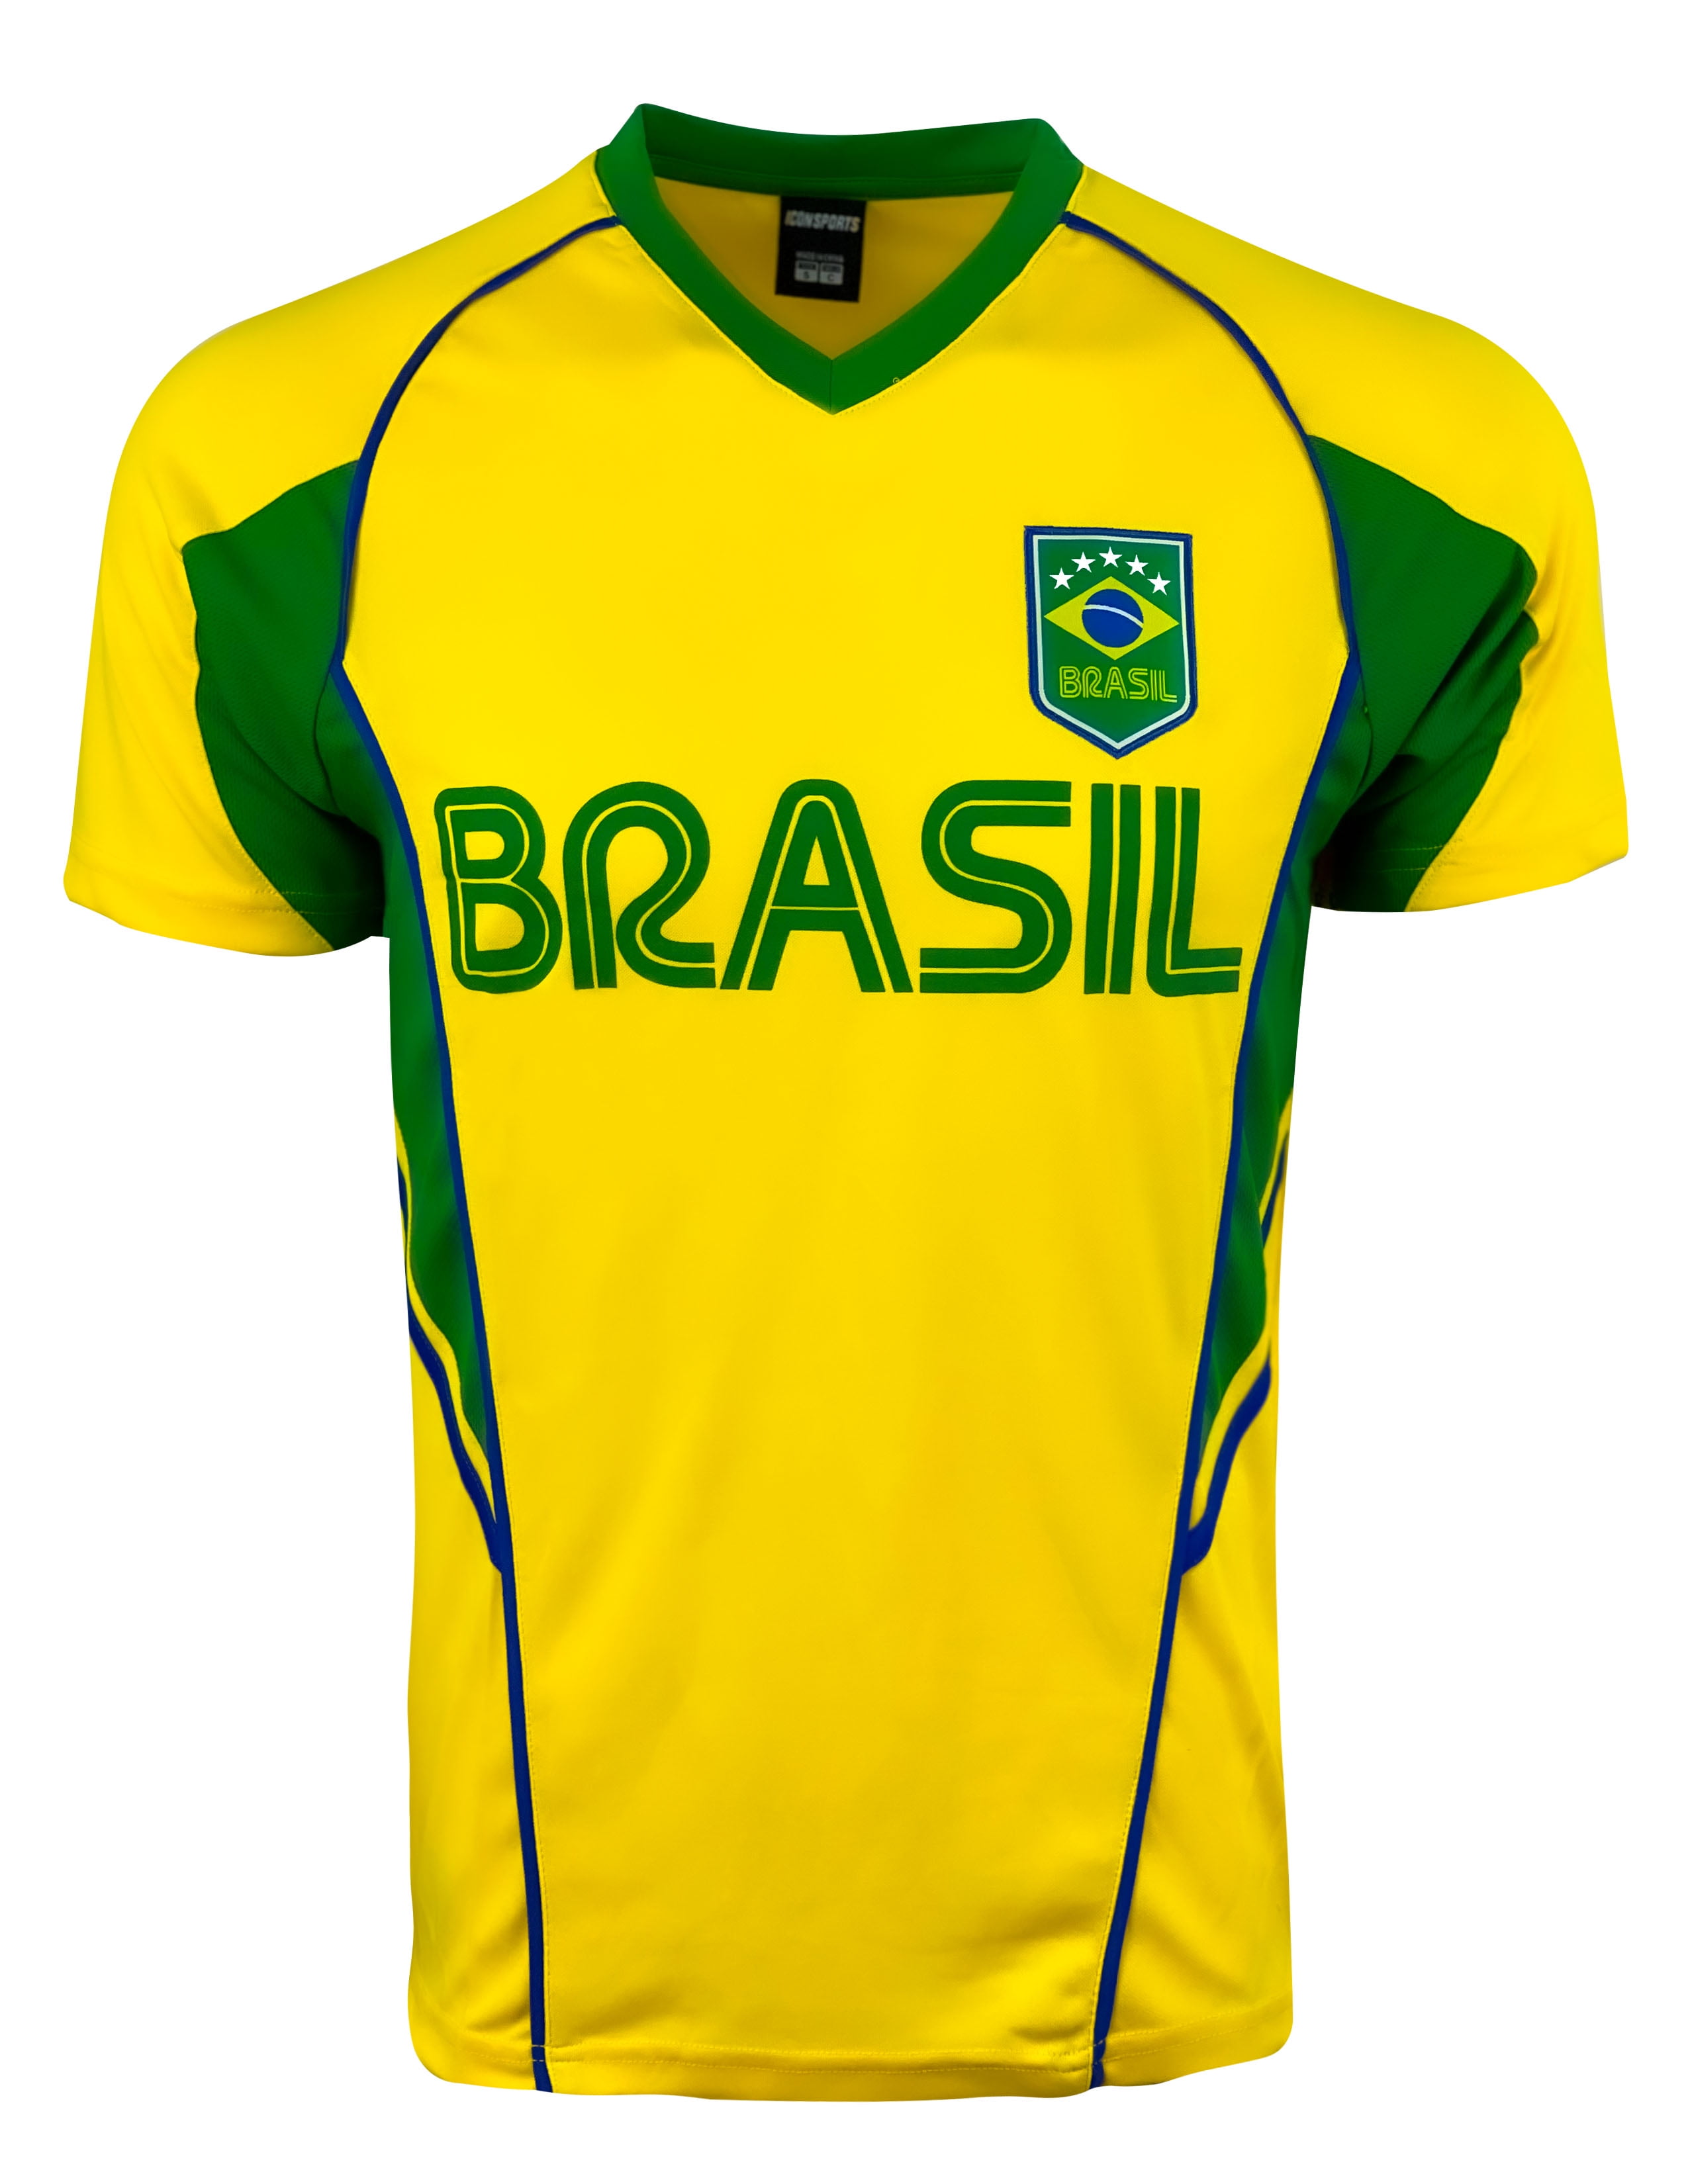 Brazilian football heritage in jerseys